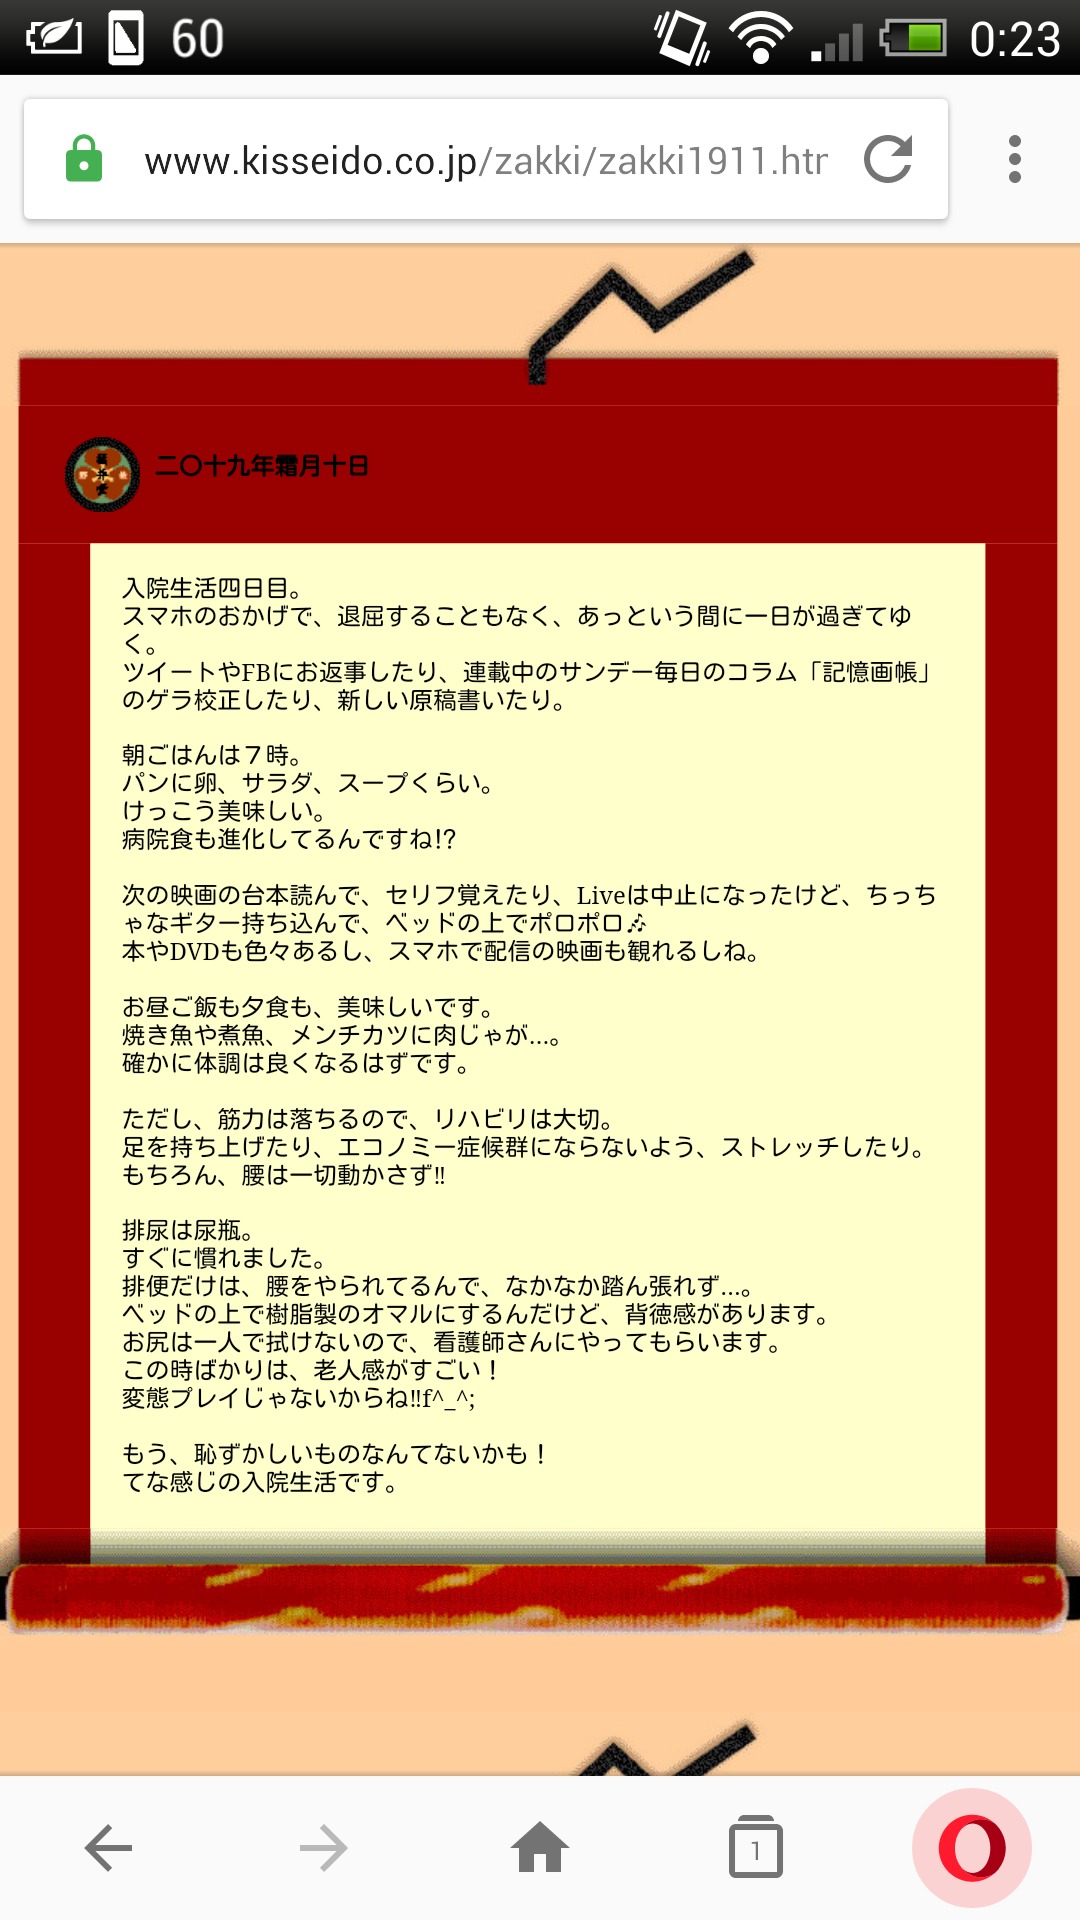 【芸能】高須光聖氏、佐野史郎へラジオ発言謝罪